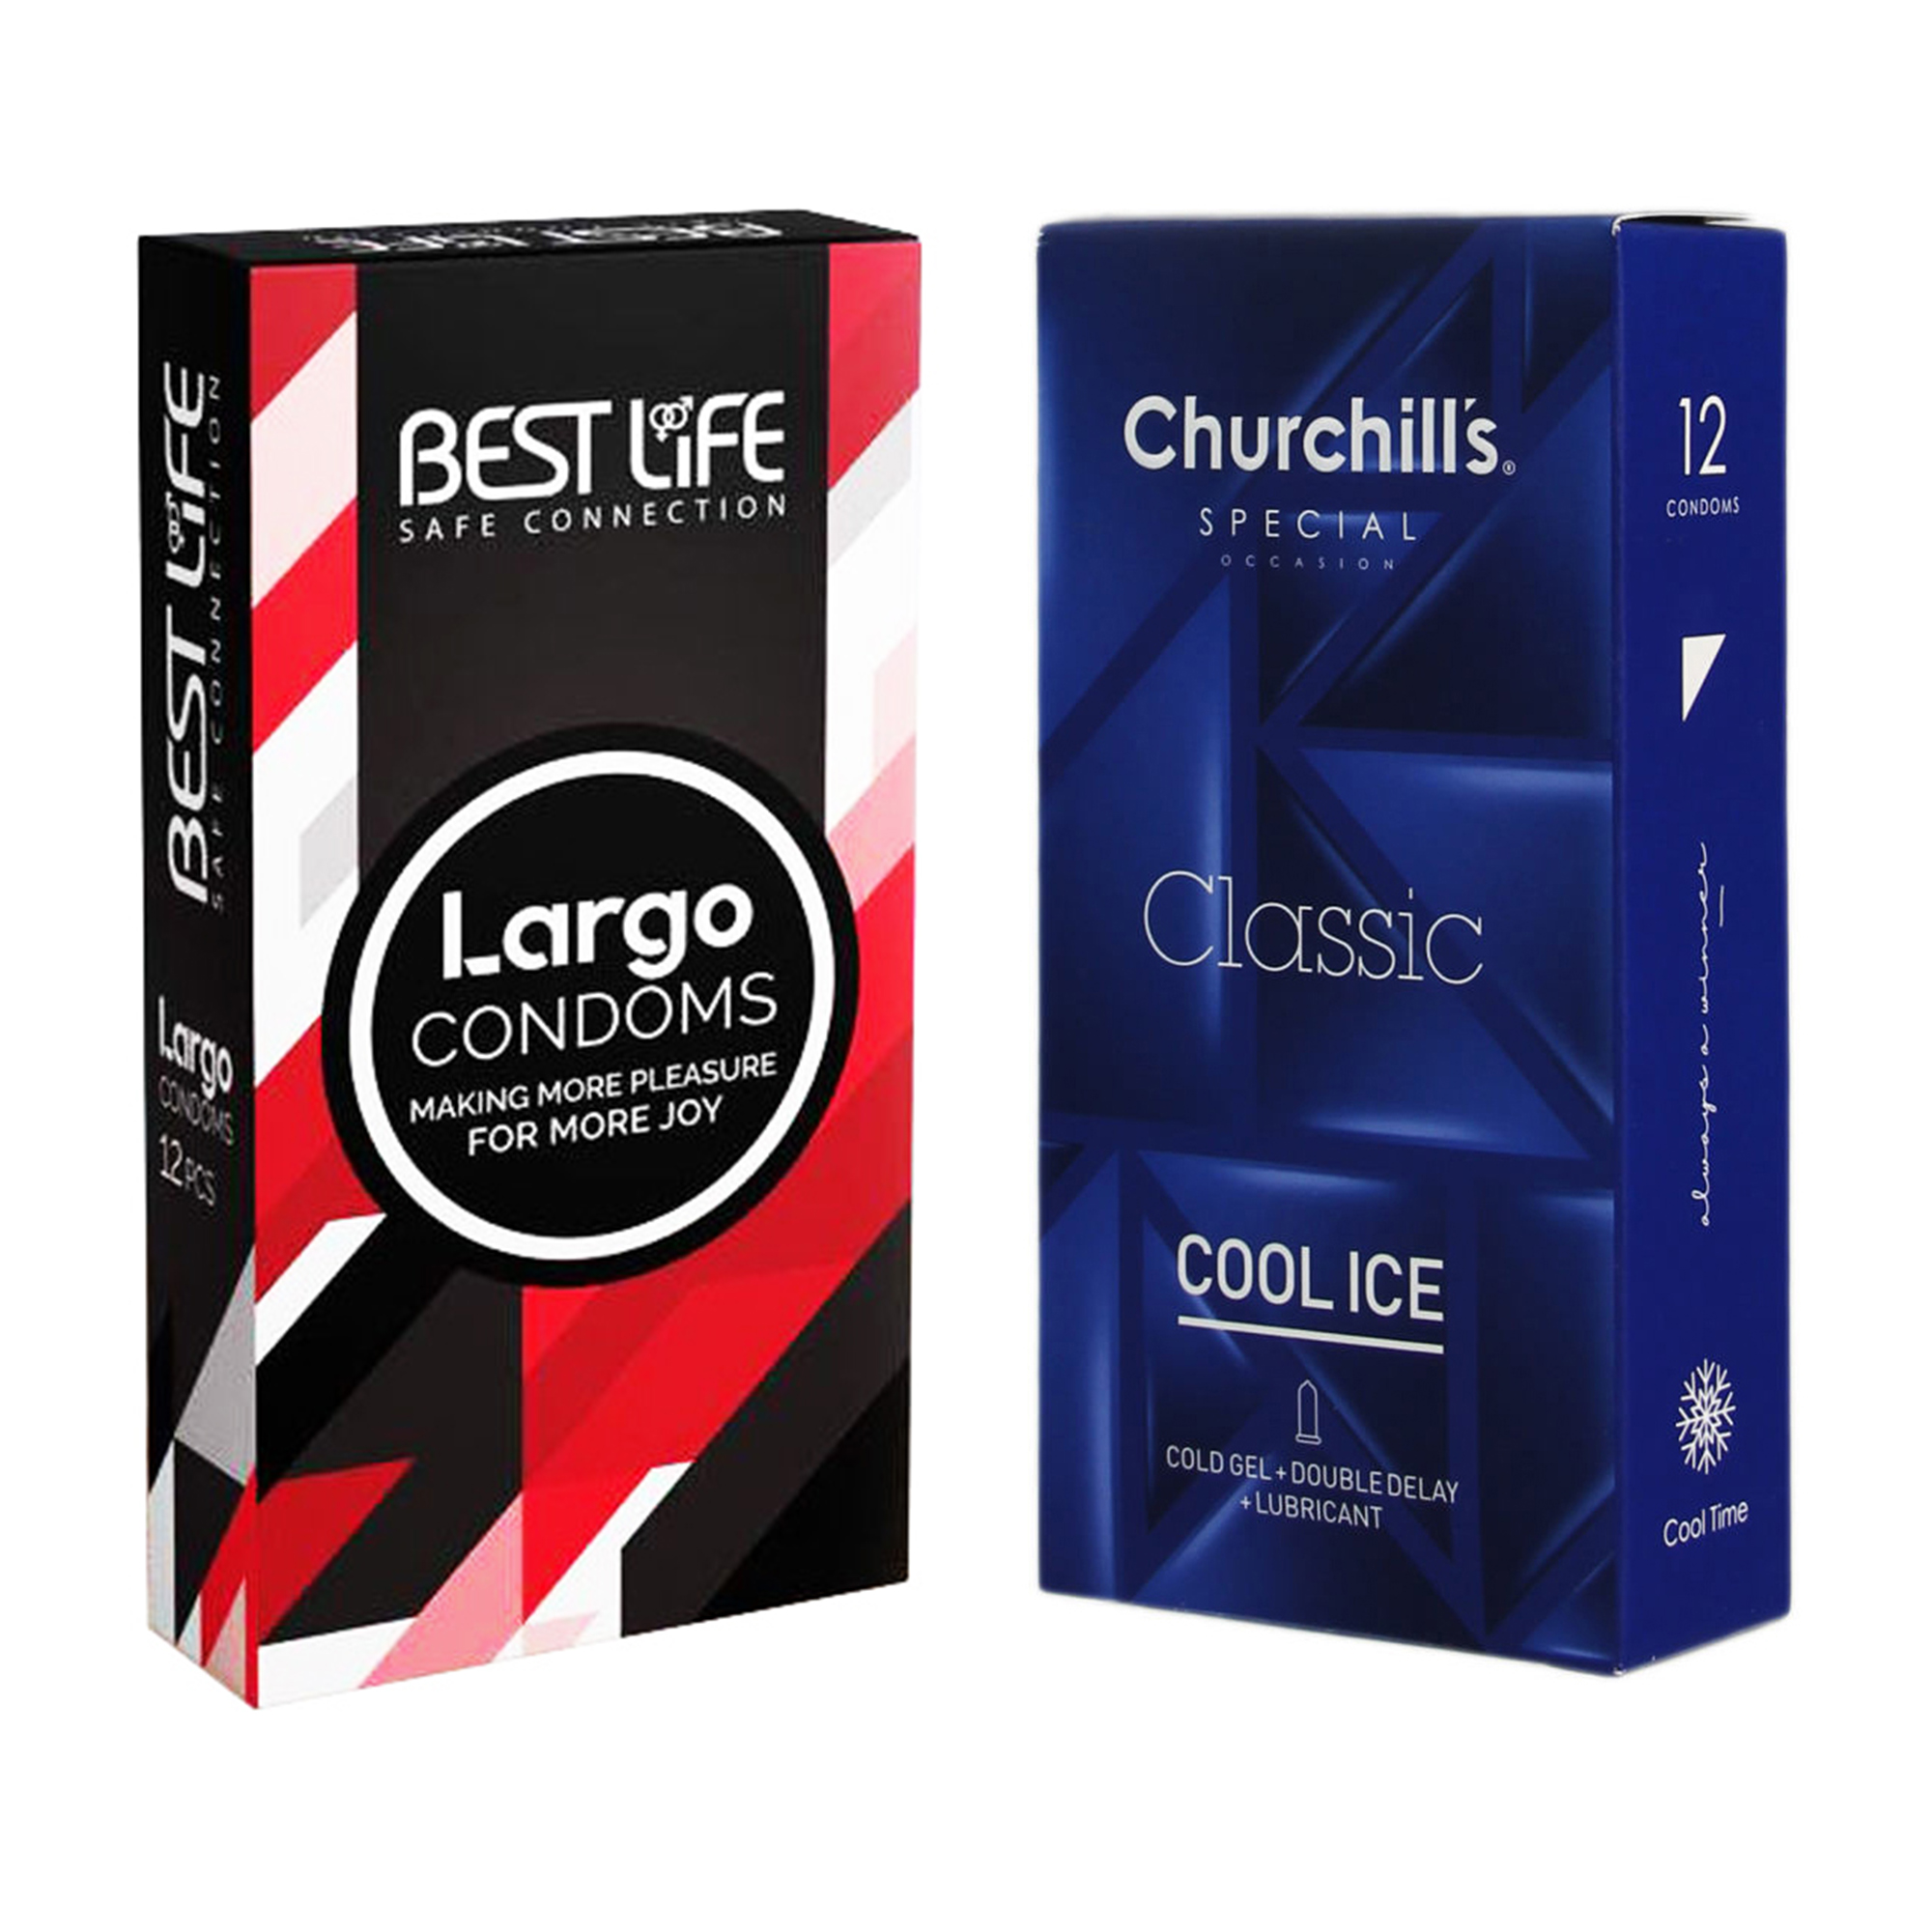 کاندوم چرچیلز مدل Cool Ice بسته 12 عددی به همراه کاندوم بست لایف مدل Largo بسته 12 عددی